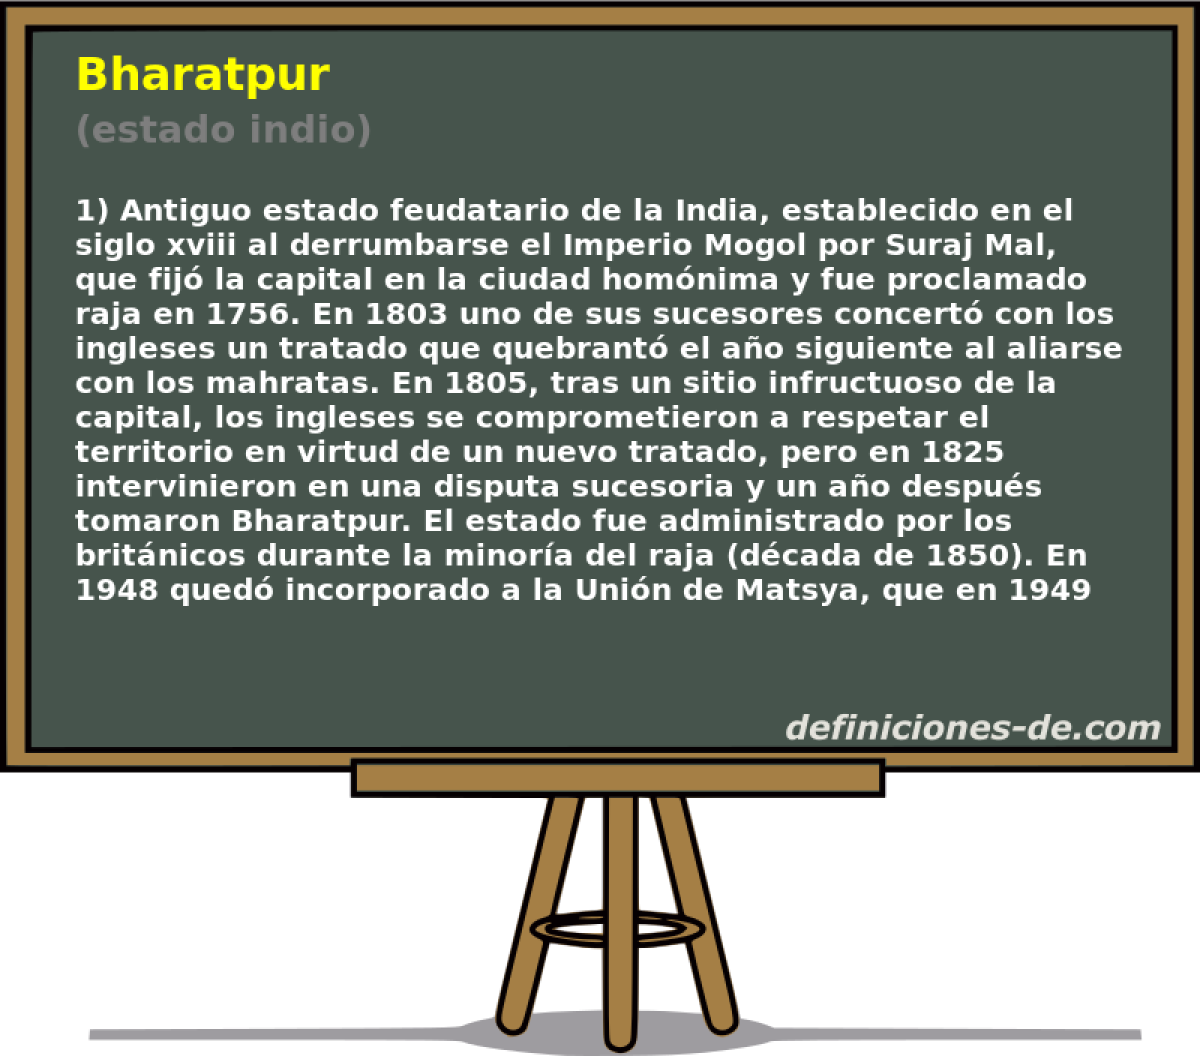 Bharatpur (estado indio)